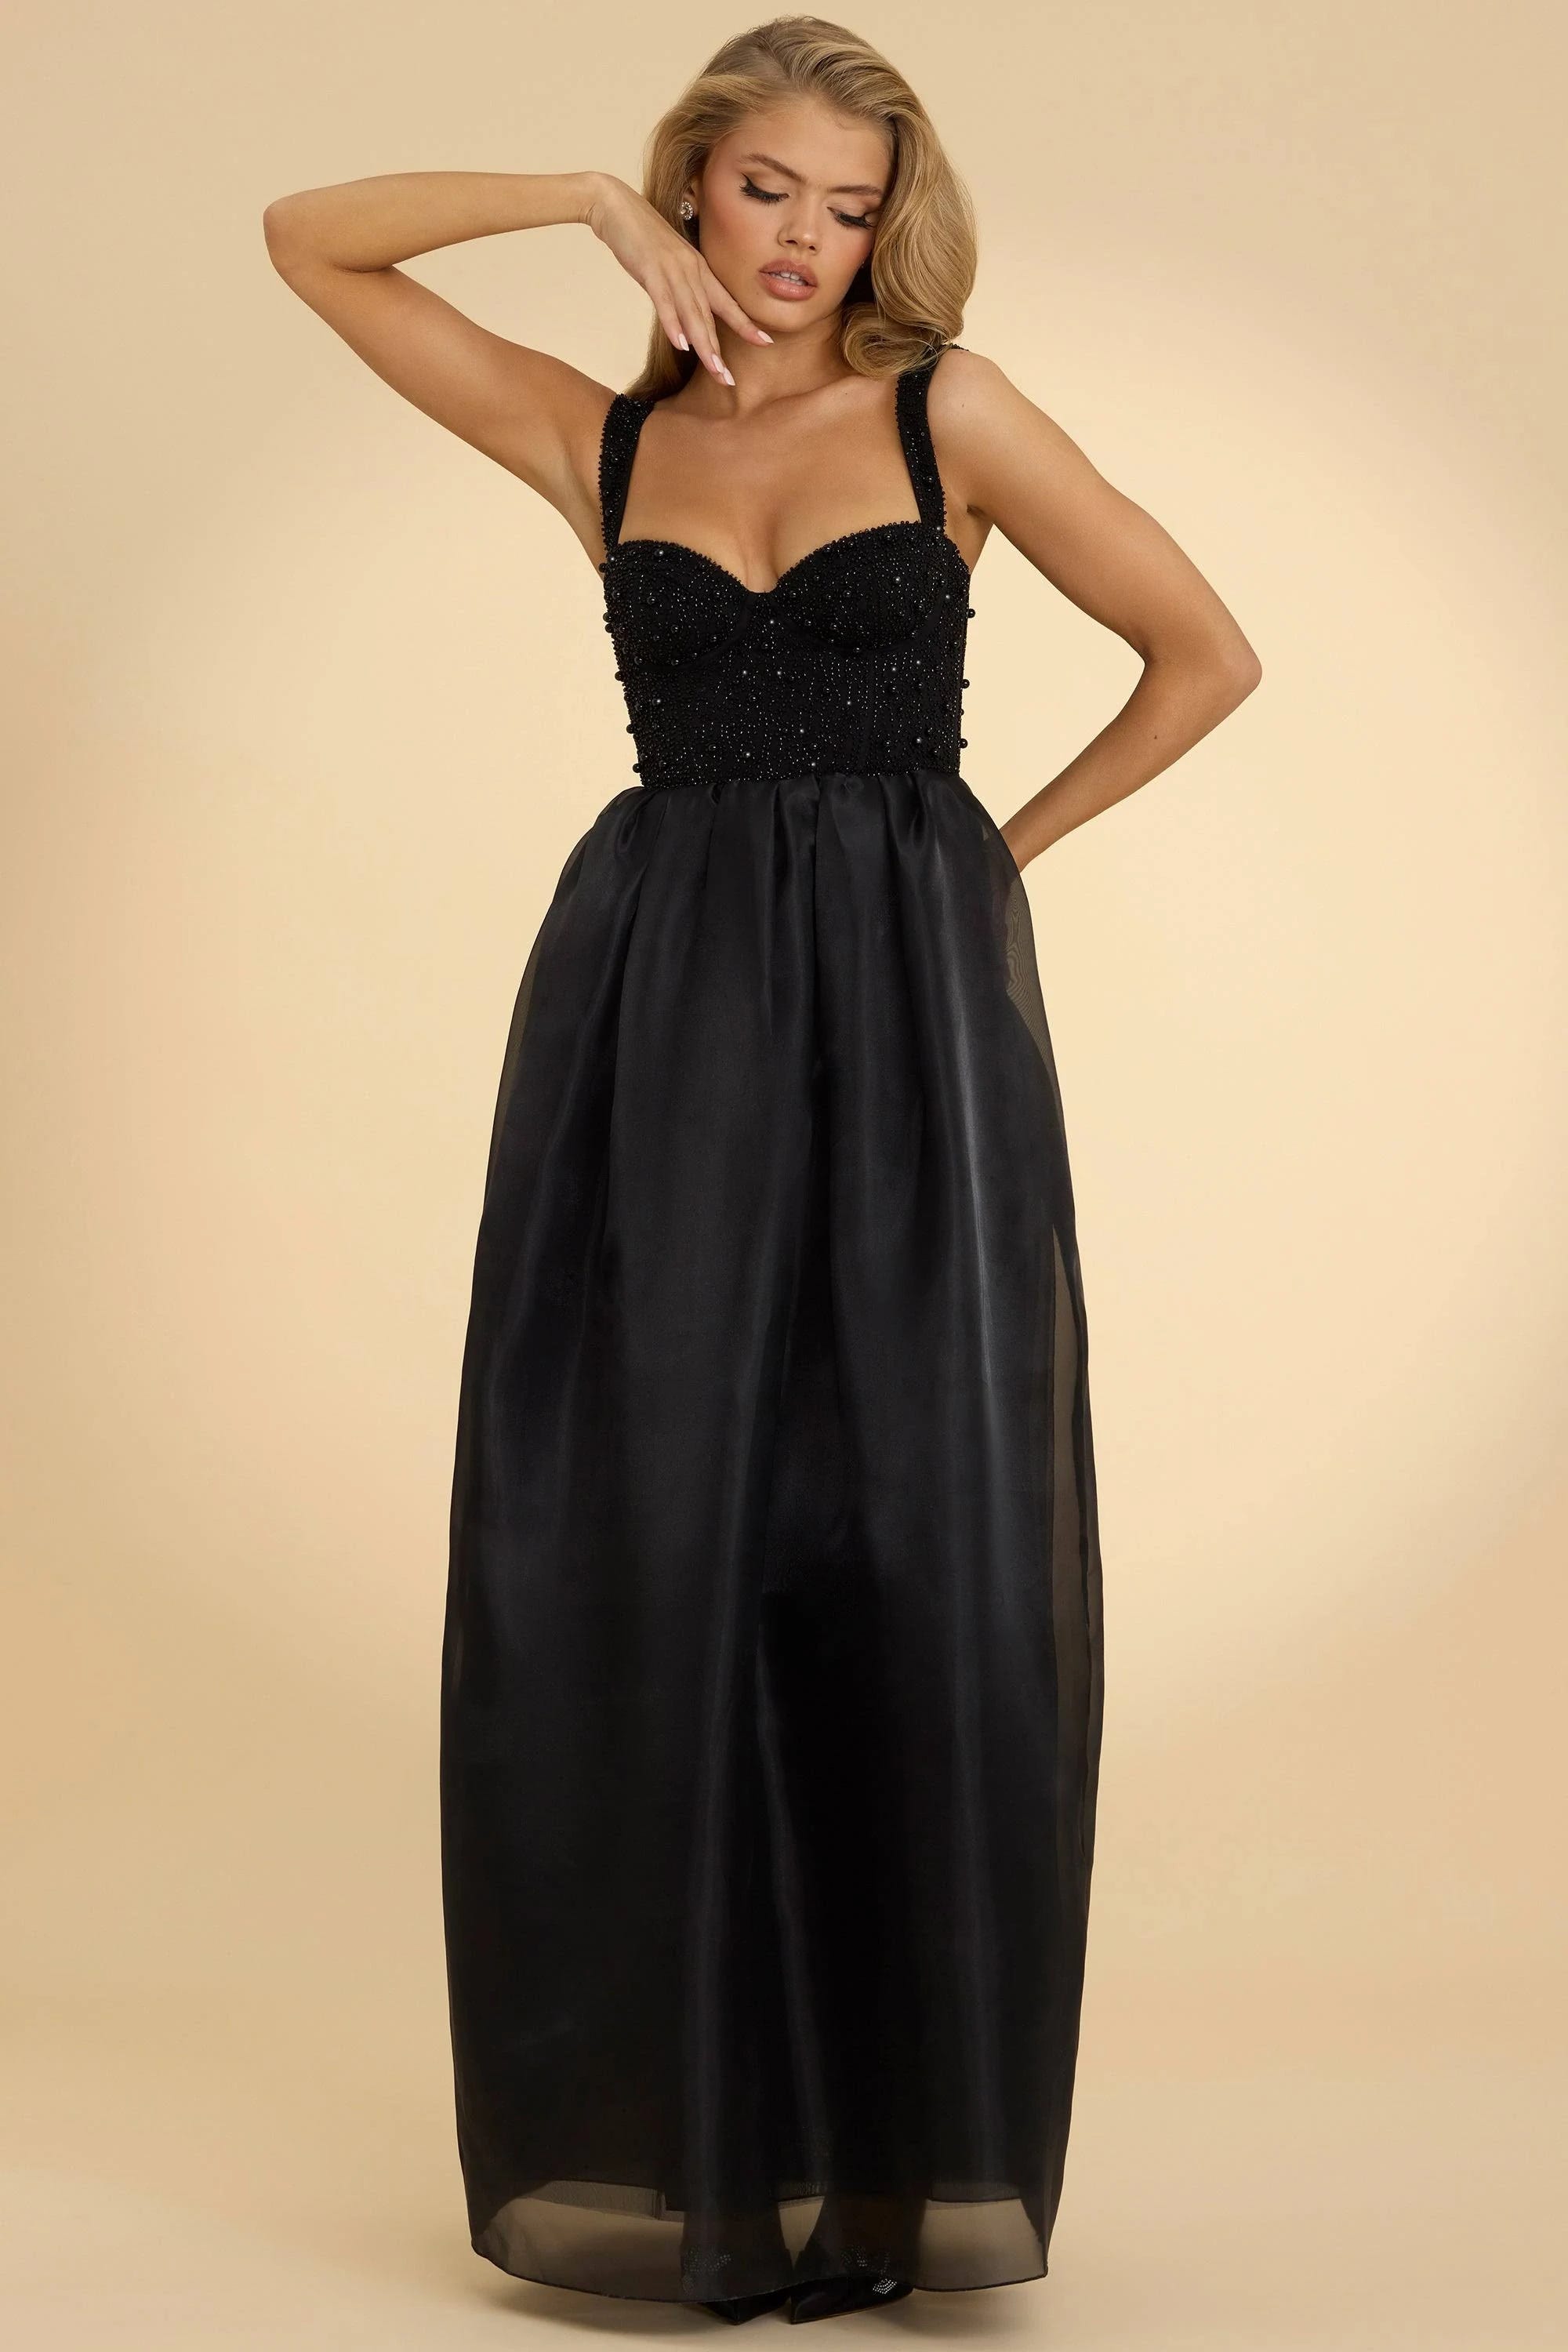 Adjustable Mesh Corset Maxi Dress in Black: Elegant Evening Wear with Hidden Zipper | Image